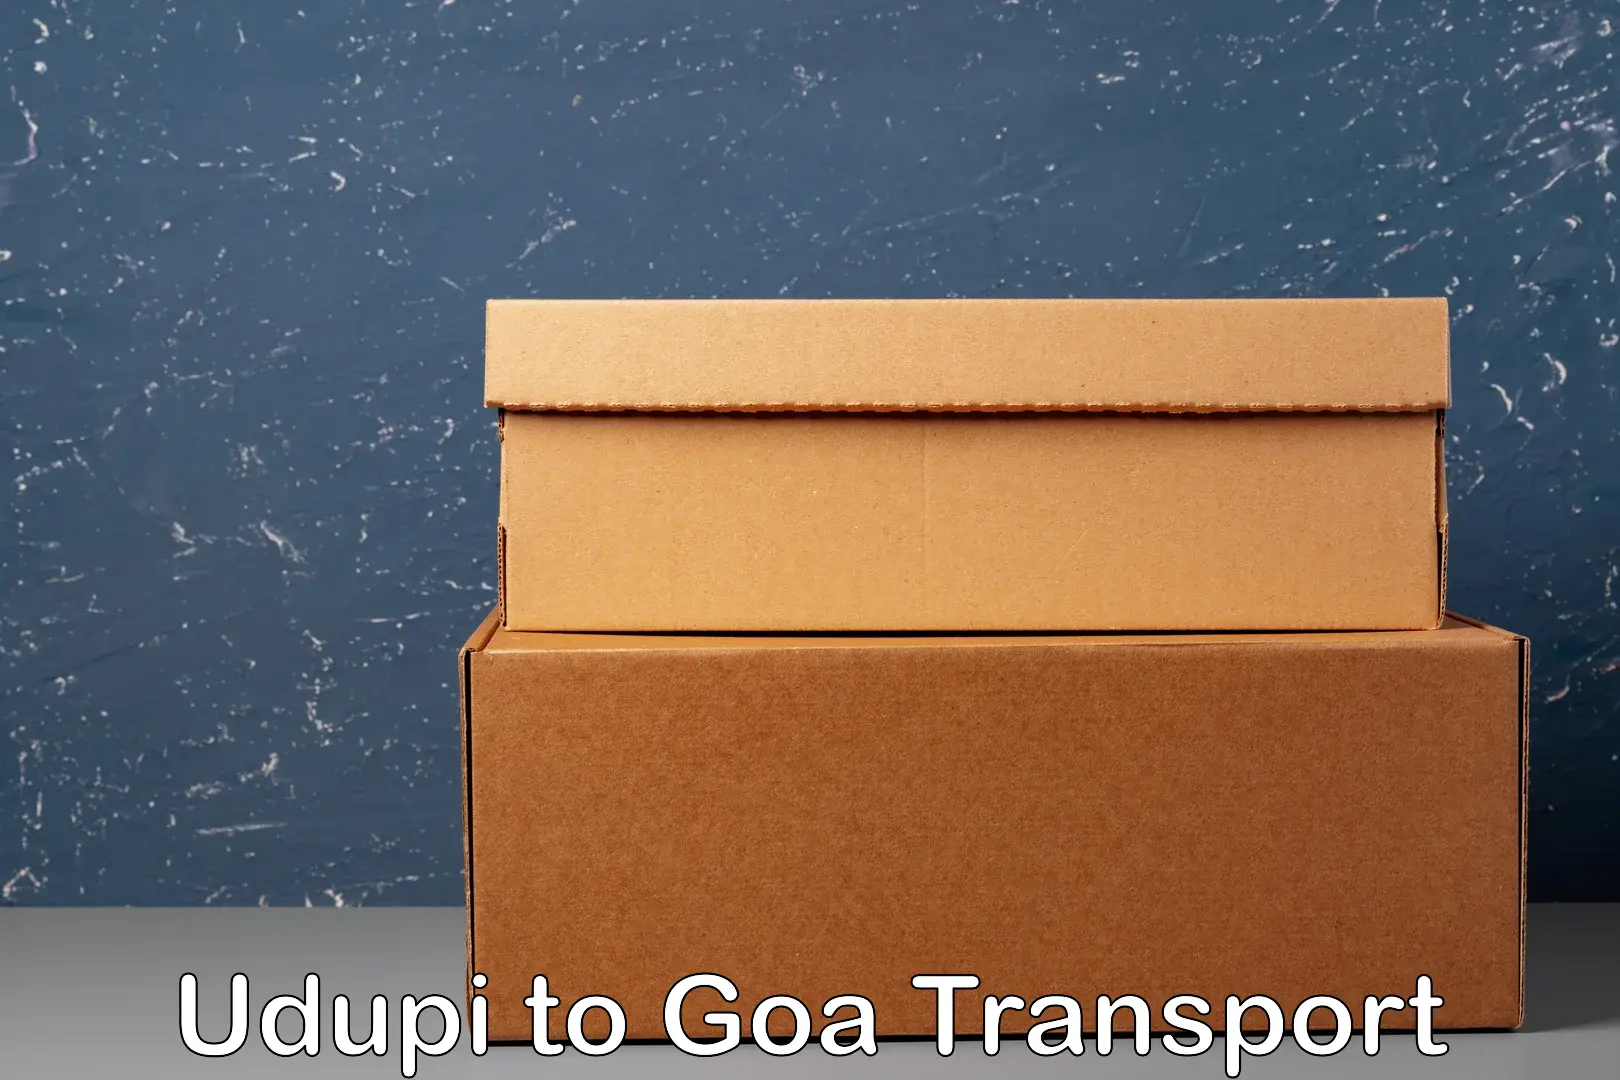 Nearest transport service Udupi to Goa University